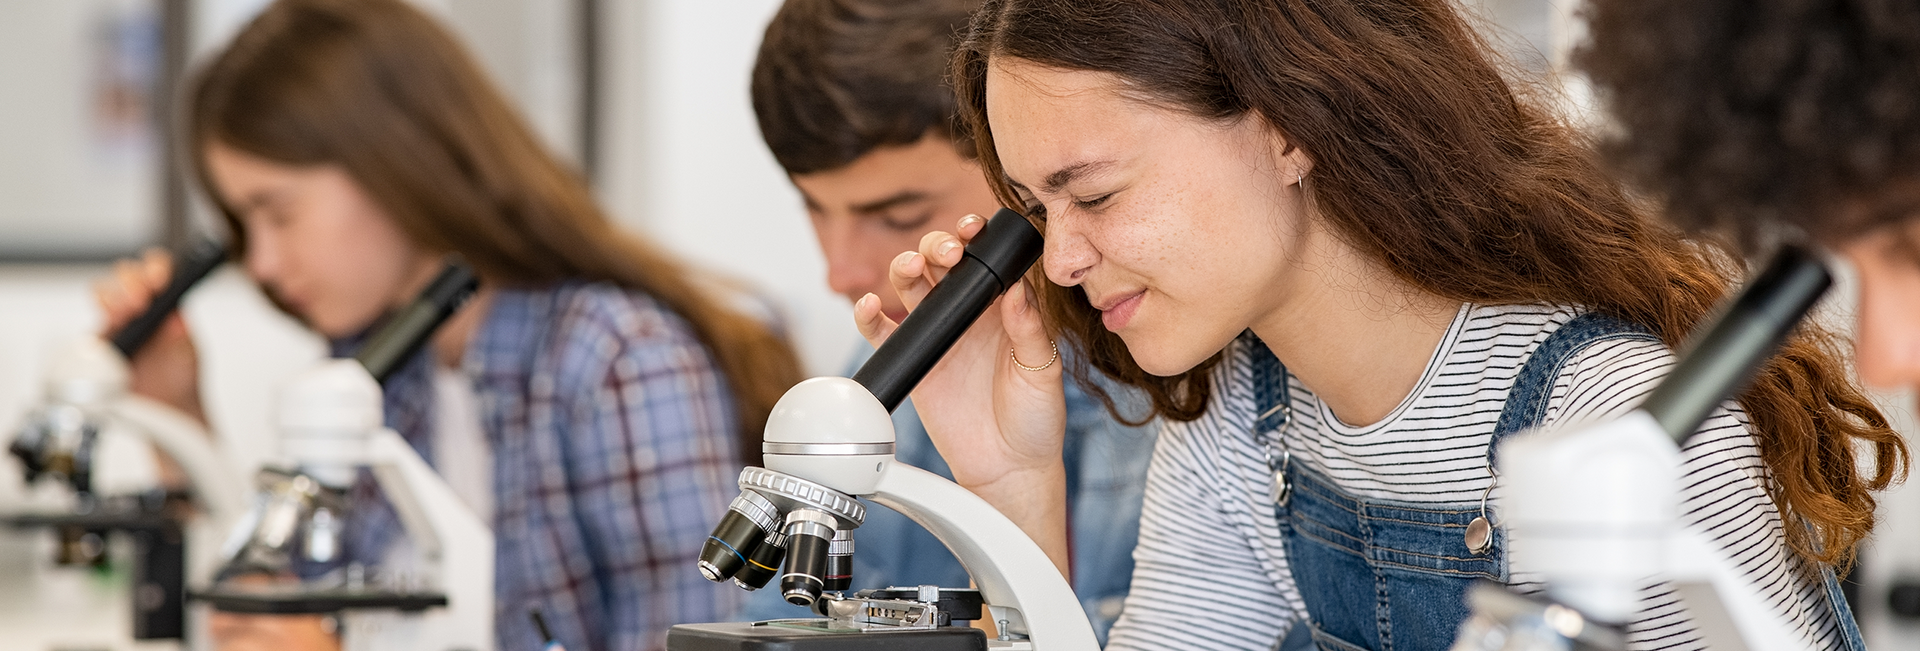 Biologieunterricht - Schülerinnen und Schüler sitzen an einem Tisch und schauen in Mikroskope